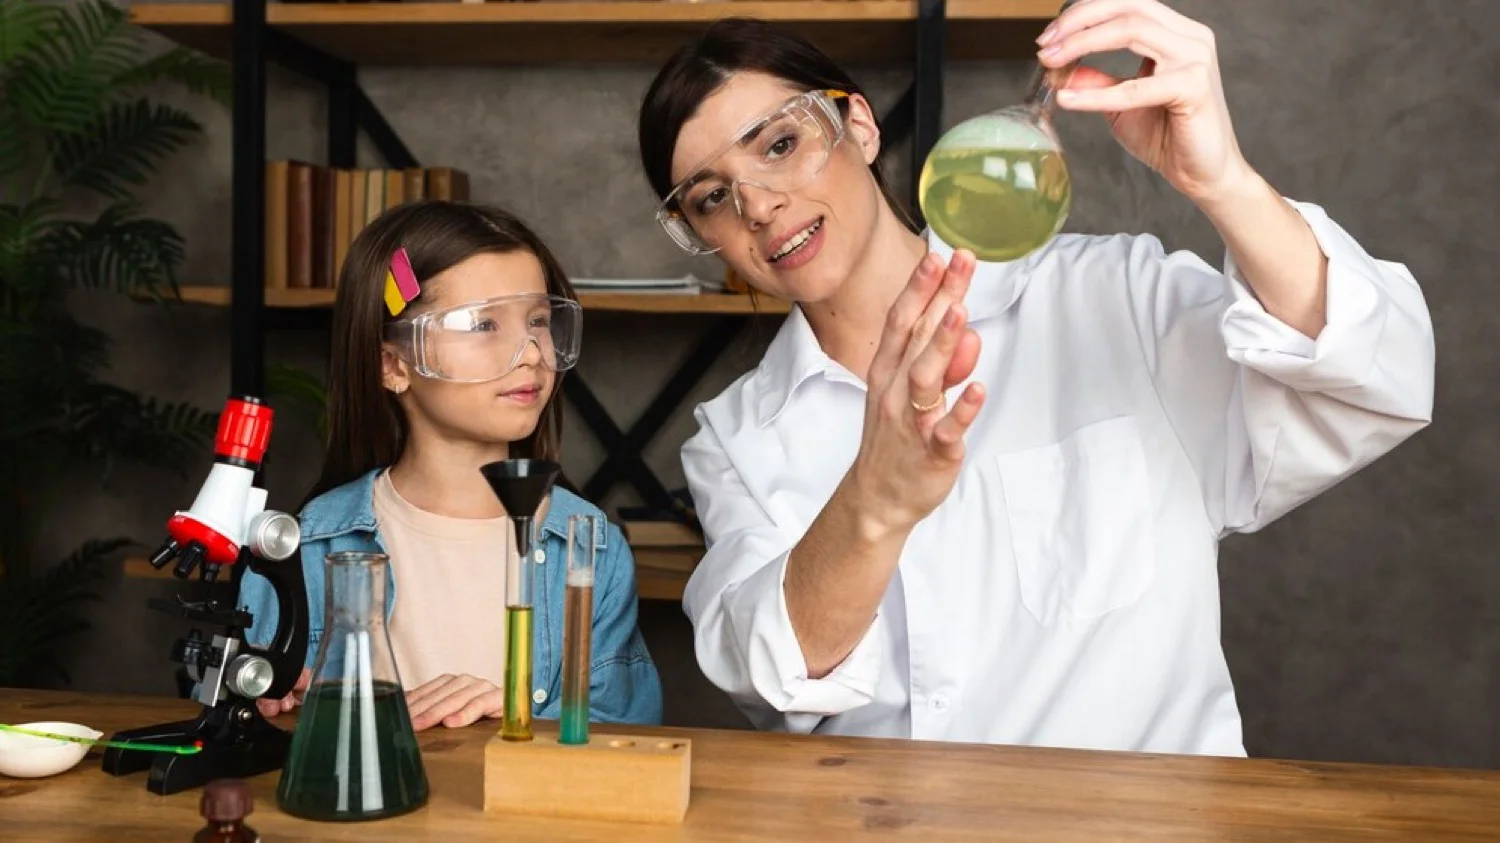 Fomenta la curiosidad y pasión por la ciencia en tus hijos